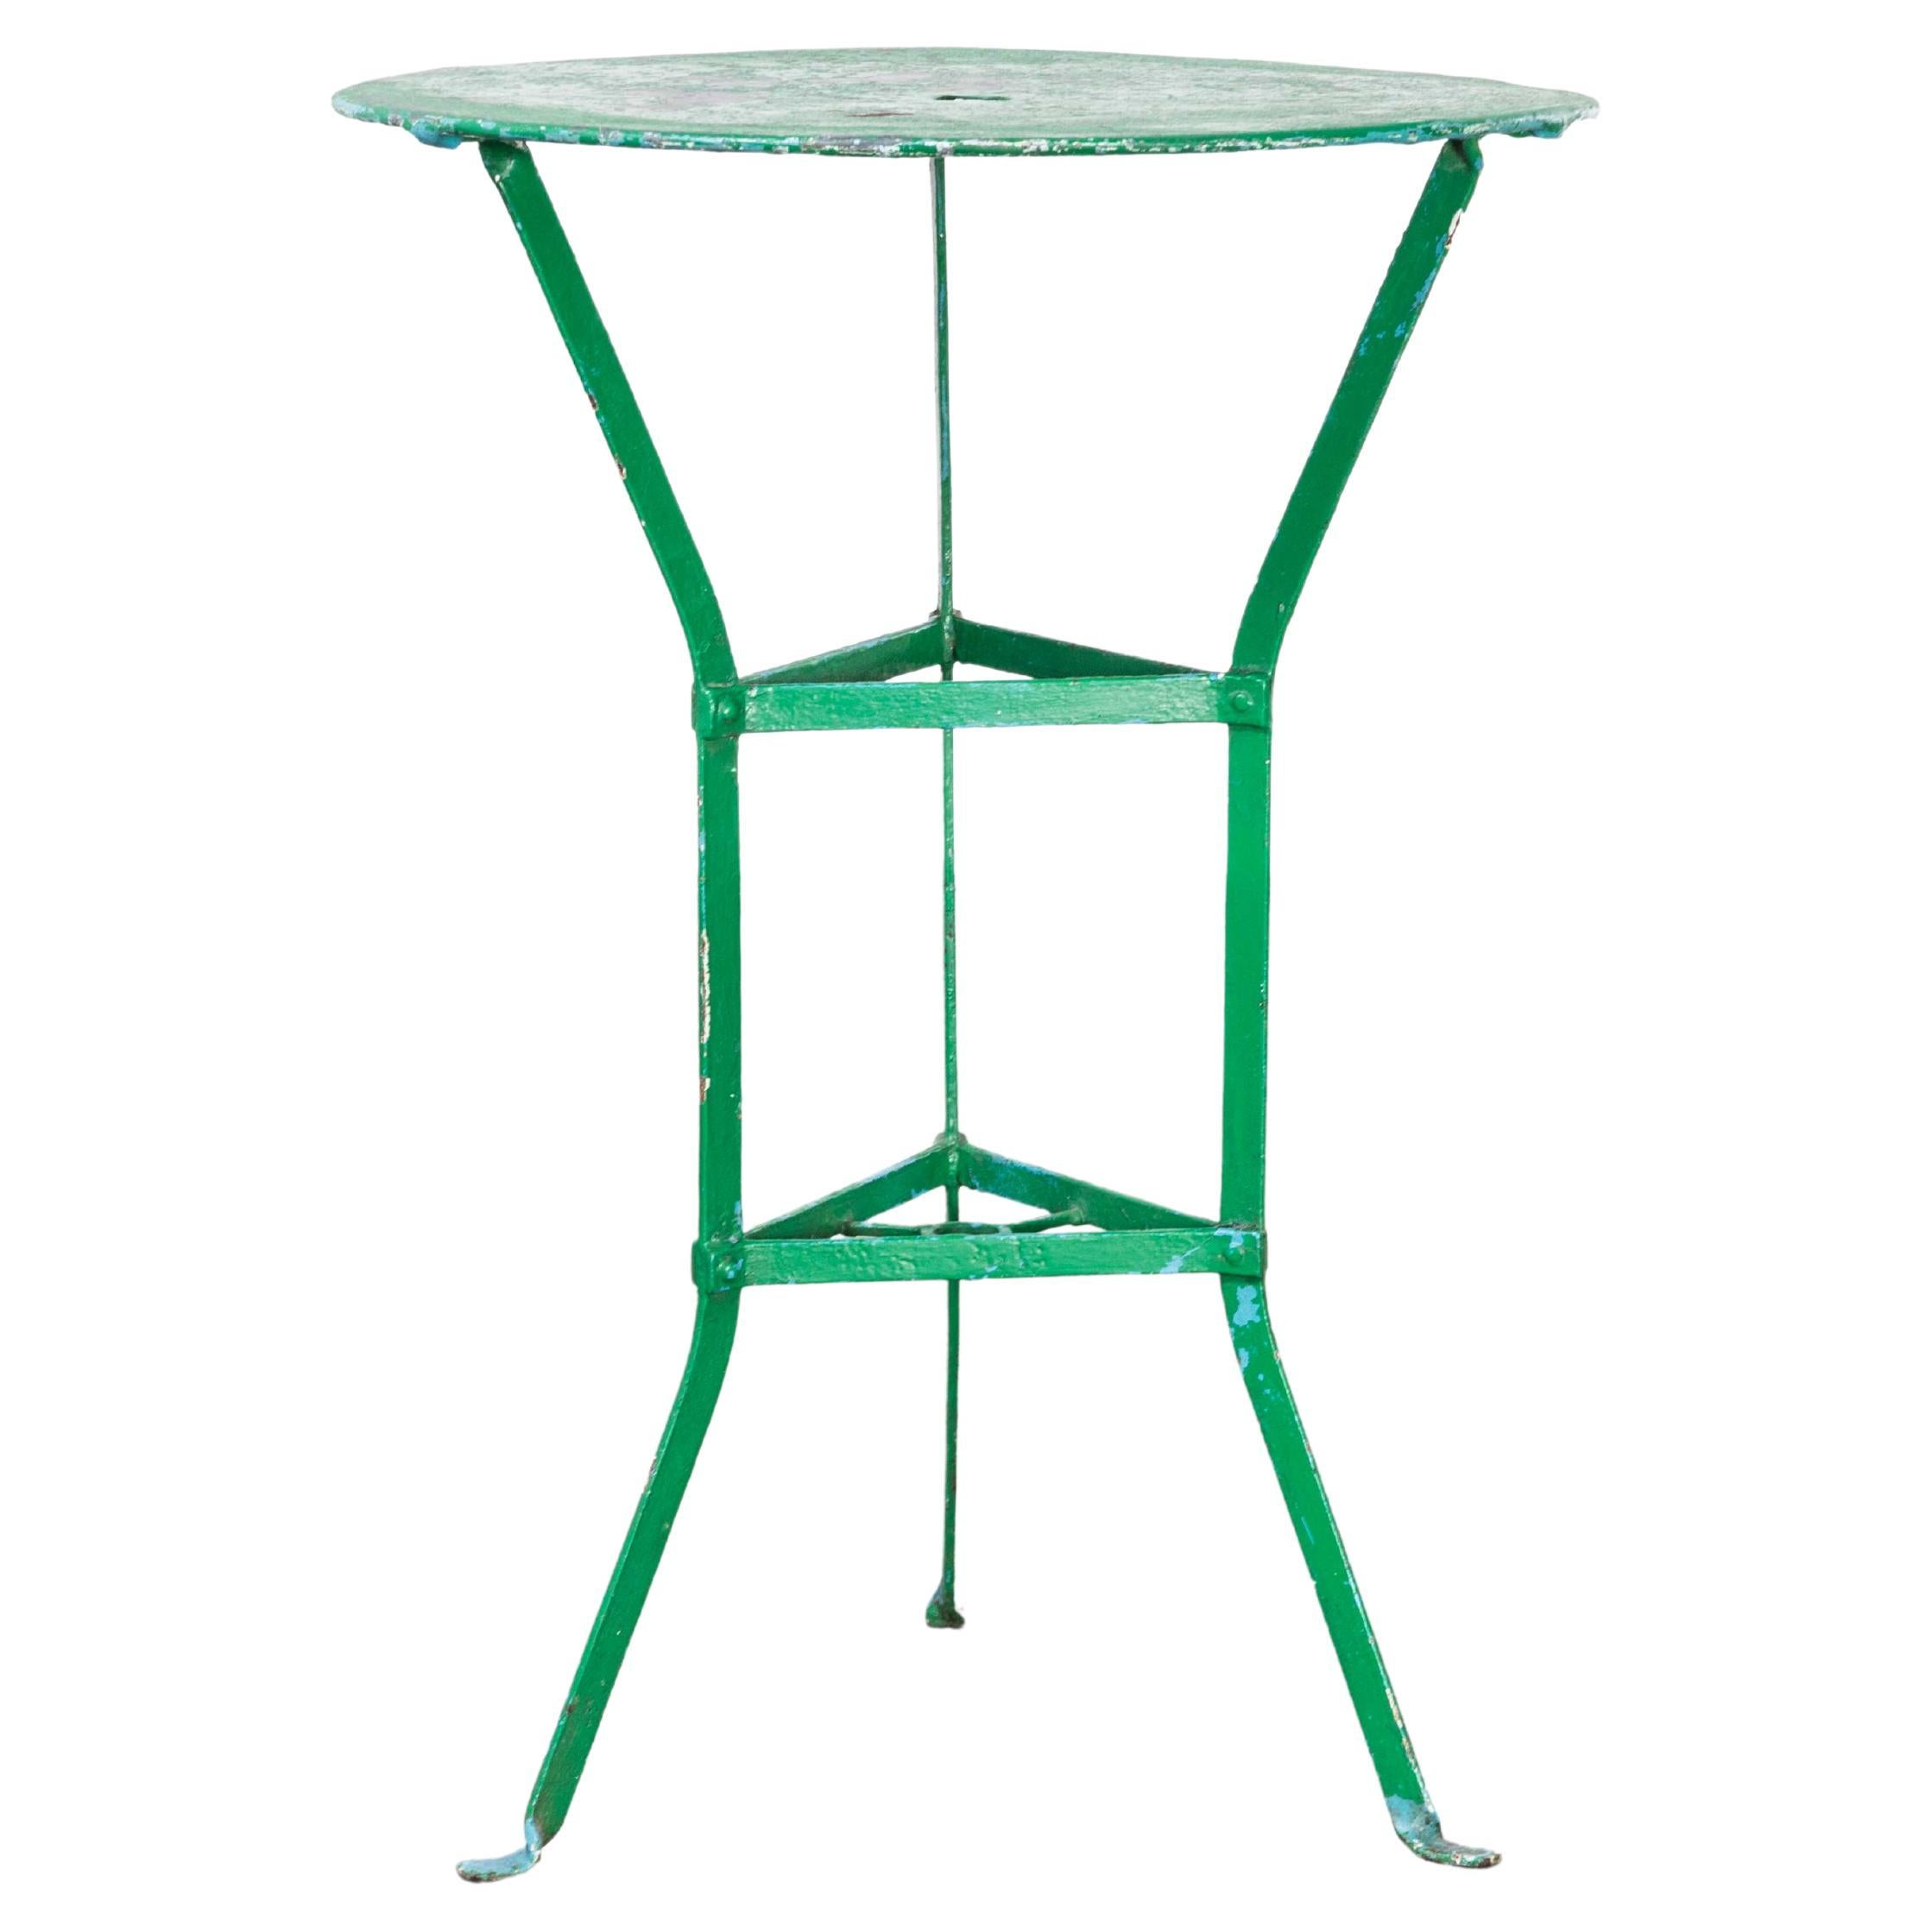 Petite table ronde en métal vert Gueridon des années 50